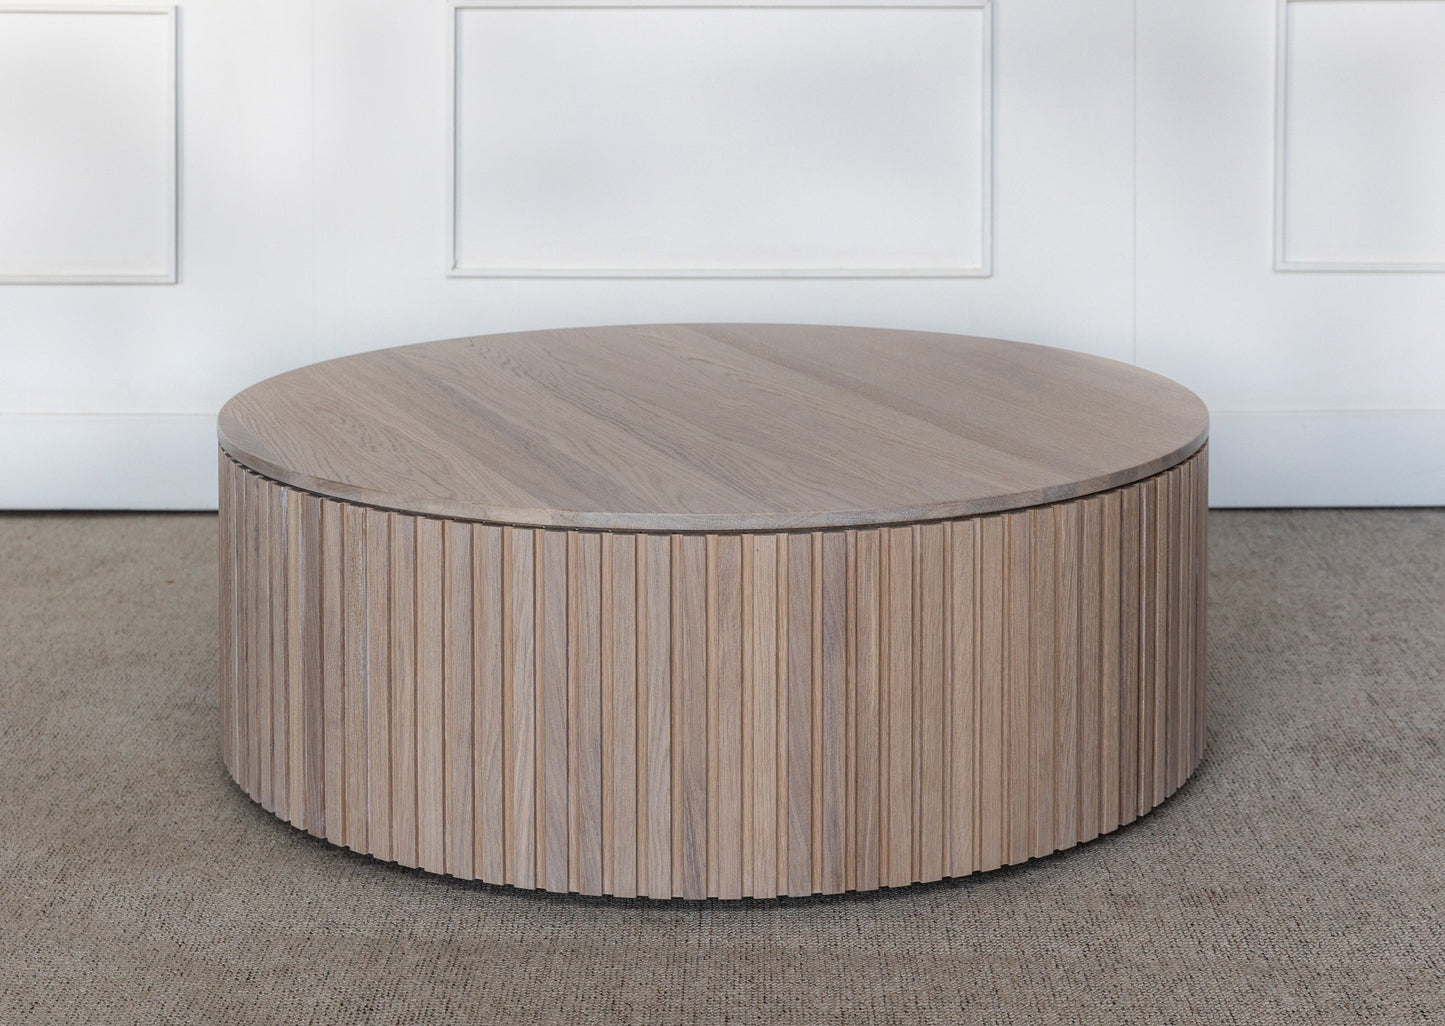 LYRA sofabord - et rundt sofabord laget av høykvalitets helte eik